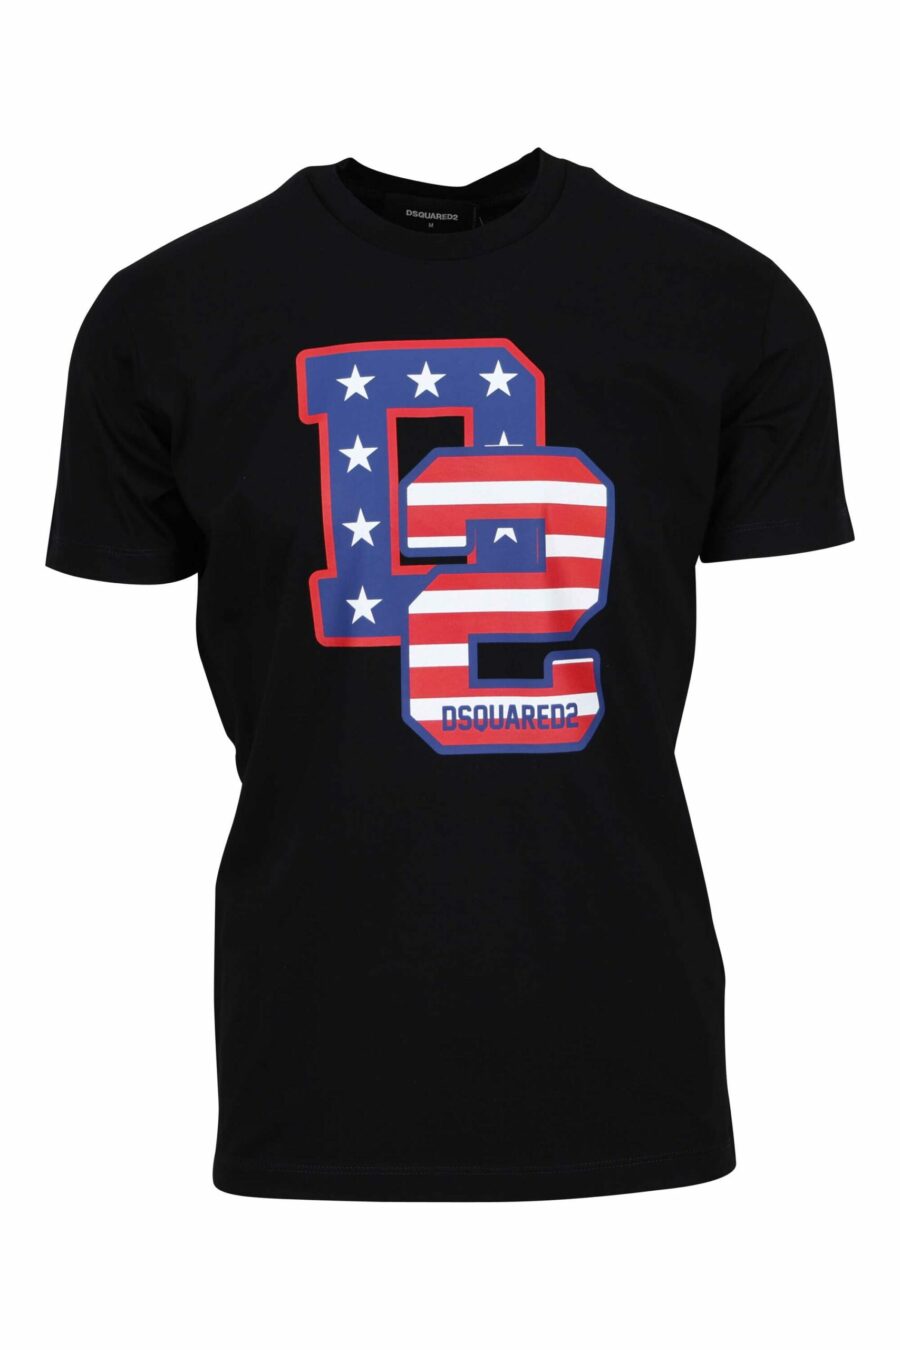 T-shirt preta com a bandeira maxilogo "D2" - 8054148332518 à escala